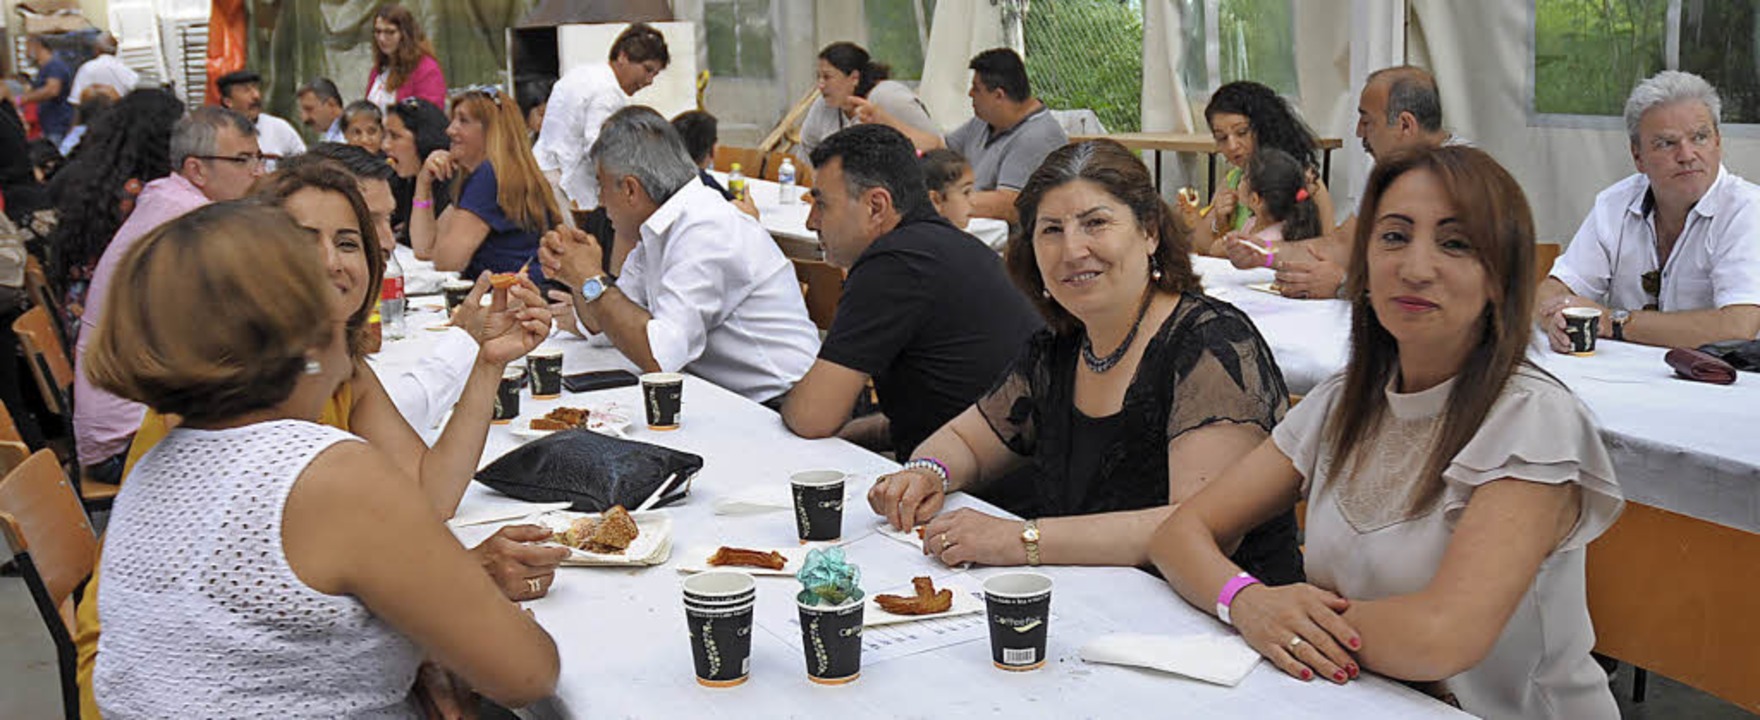 Gäste feierten entspannt bei selbstgeb...igkeiten und türkischen Spezialitäten.  | Foto: Ounas-Kräusel